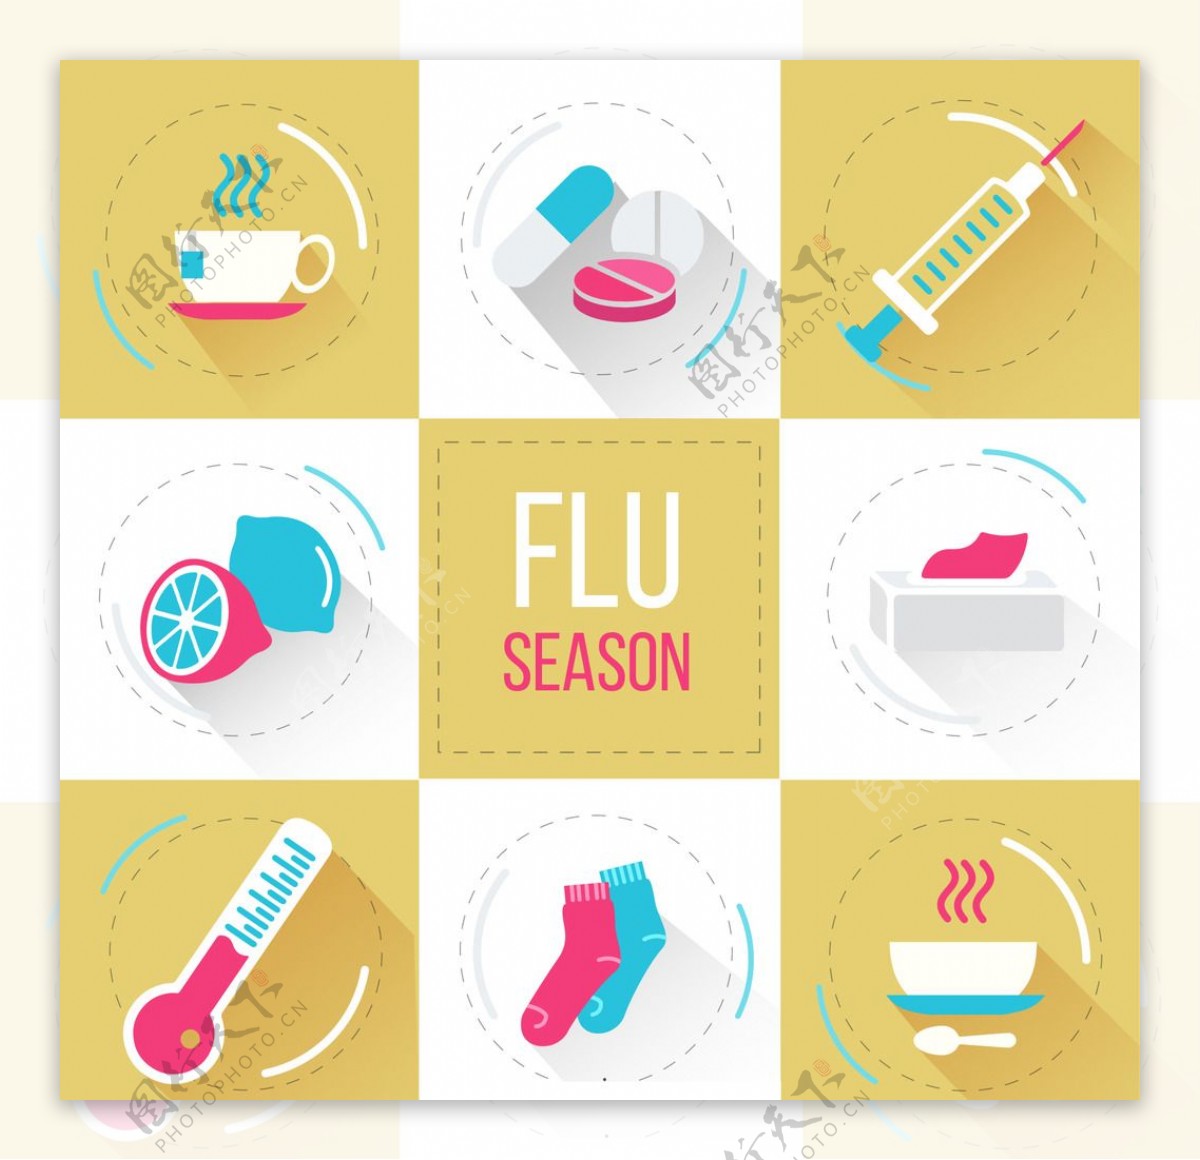 流感季节